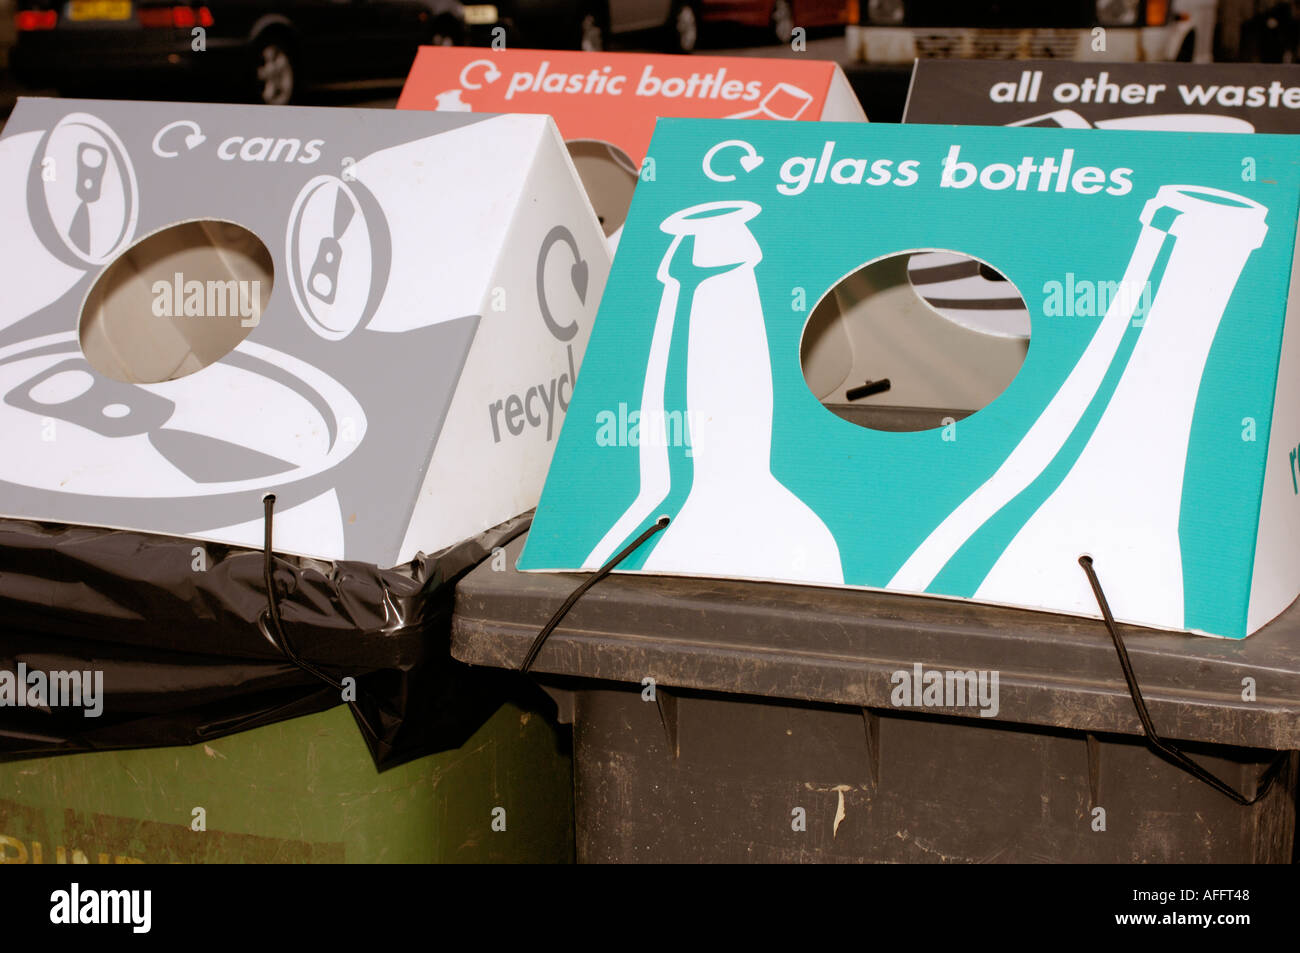 Conteneurs de recyclage pour les bouteilles en plastique et les canettes en verre Banque D'Images